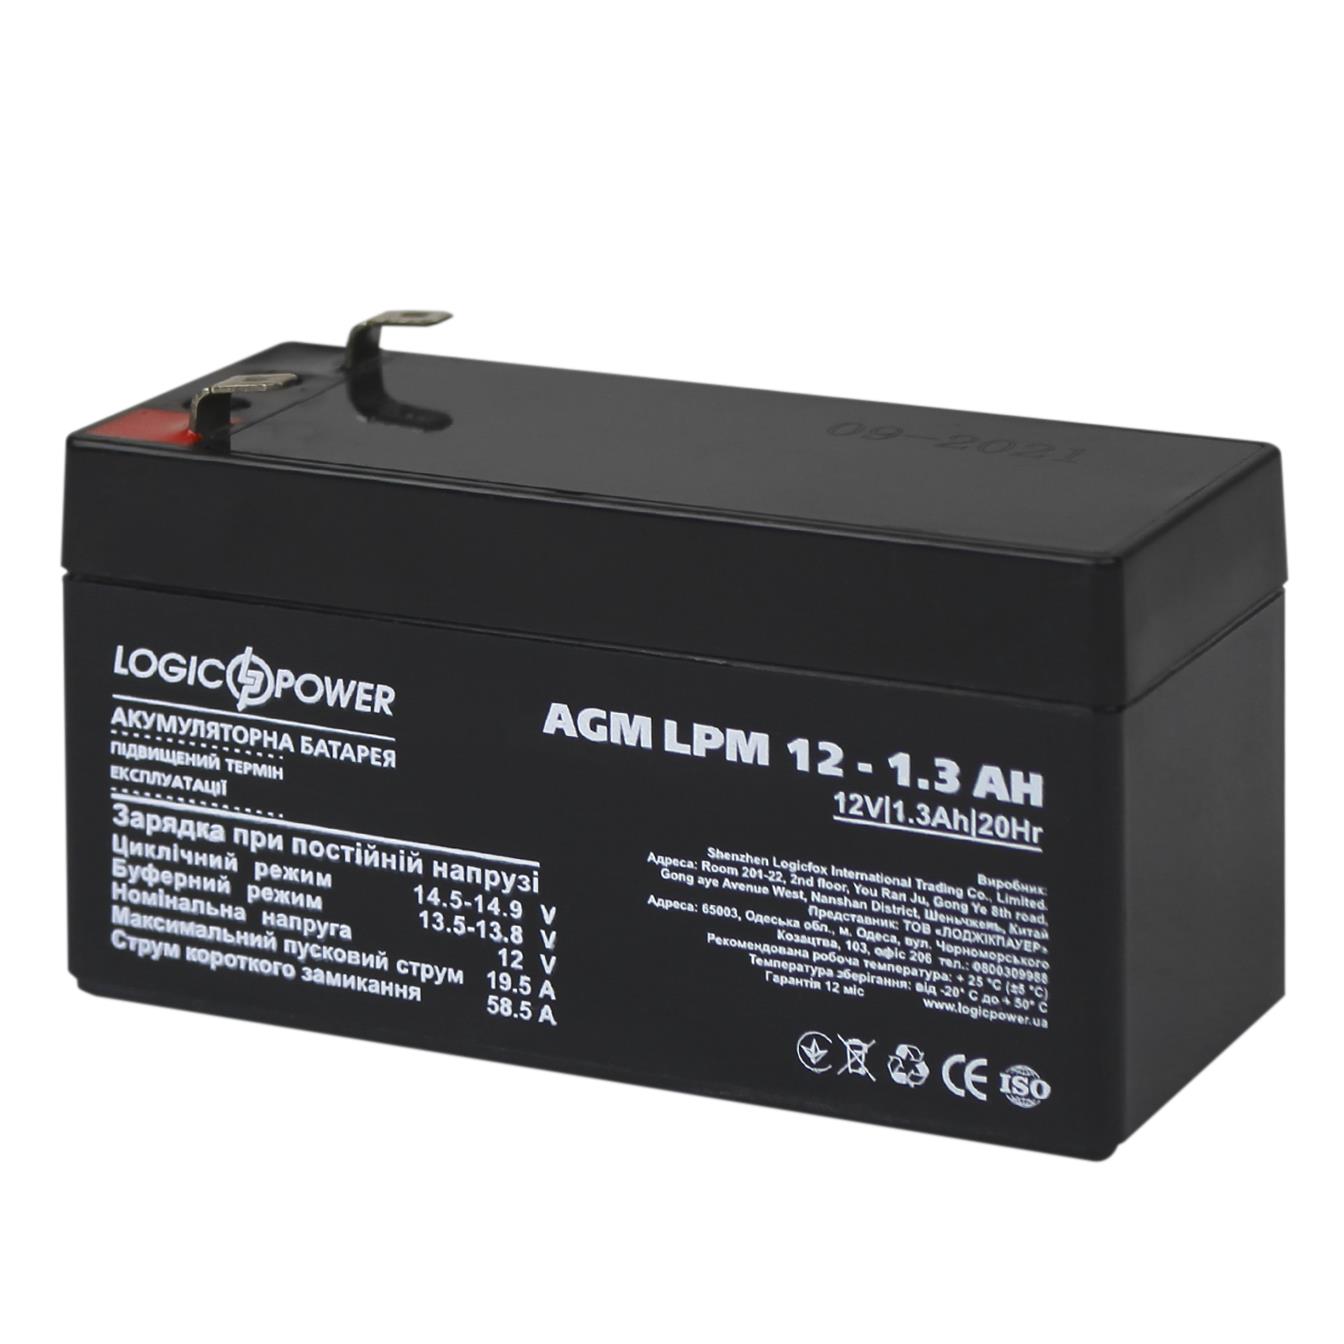 Характеристики акумулятор свинцево-кислотний LogicPower AGM LPM 12V - 1.3 Ah (4131)